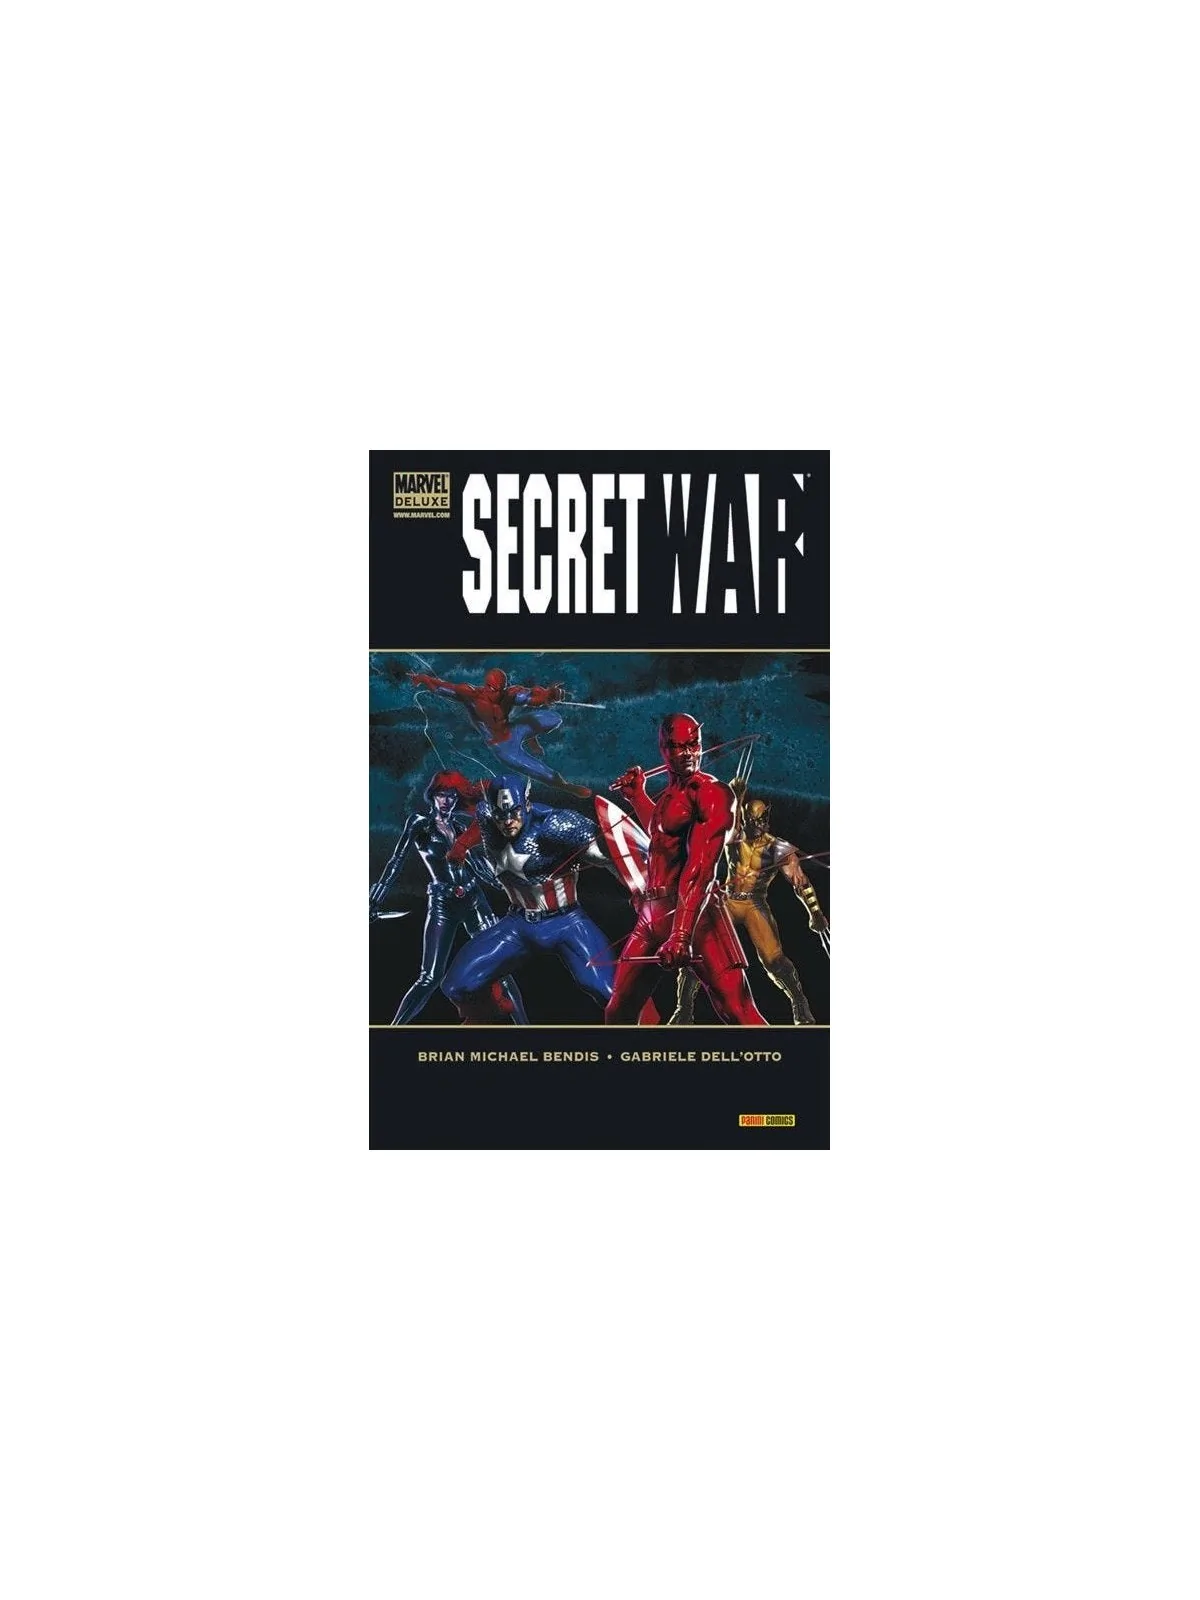 Comprar Marvel Deluxe: Secret War barato al mejor precio 20,90 € de Pa